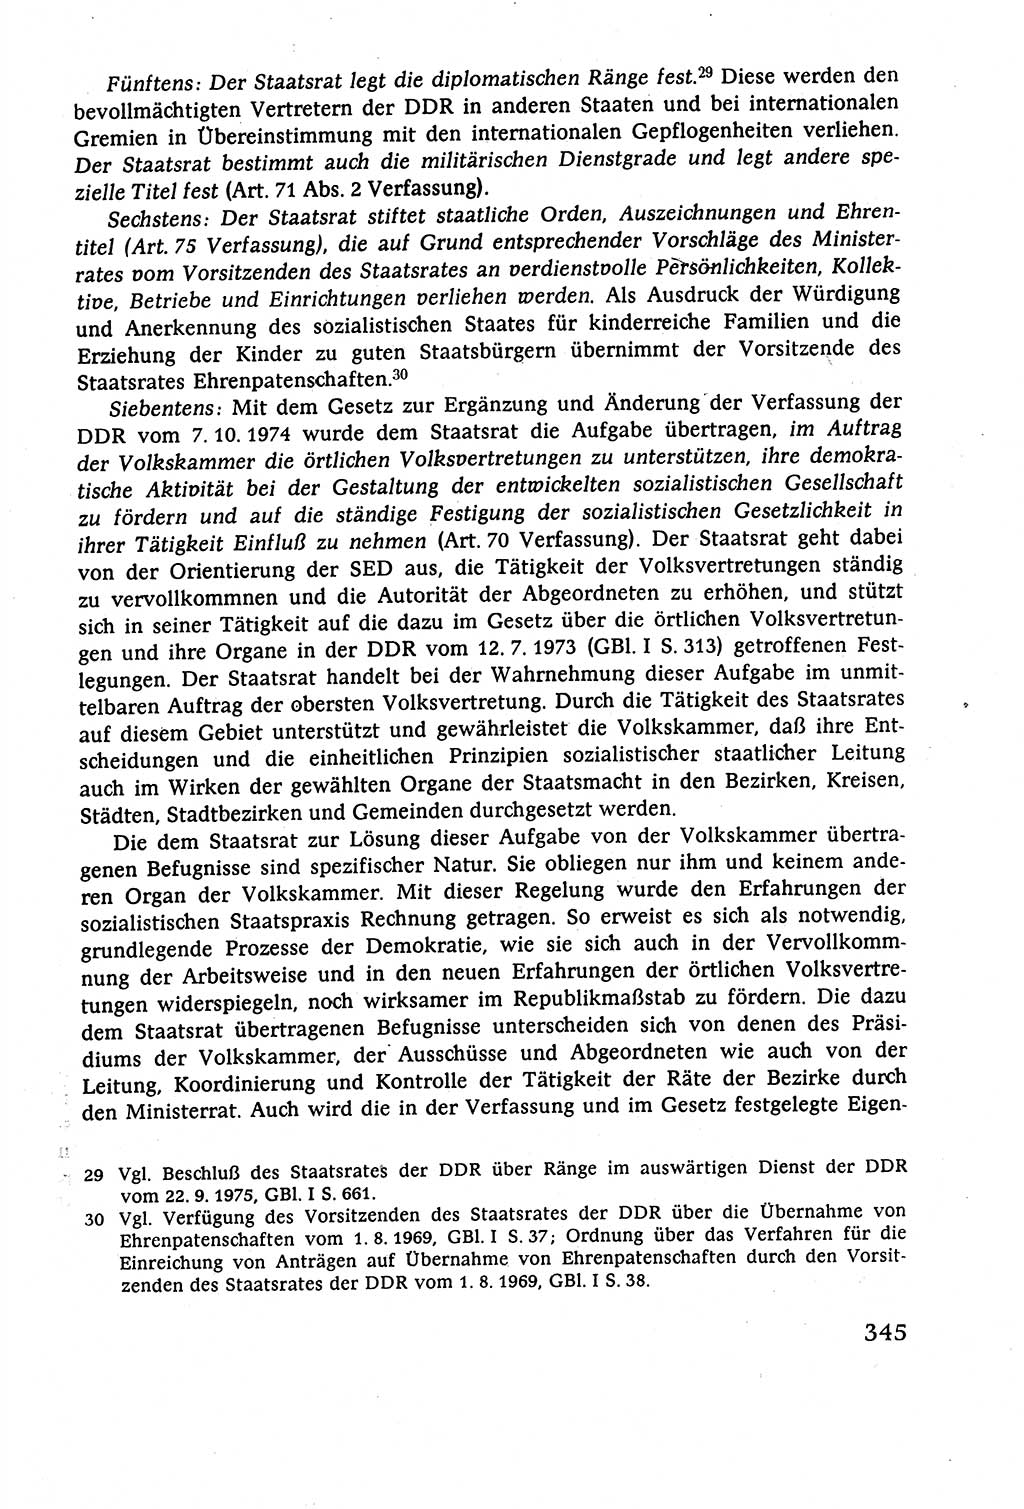 Staatsrecht der DDR (Deutsche Demokratische Republik), Lehrbuch 1977, Seite 345 (St.-R. DDR Lb. 1977, S. 345)